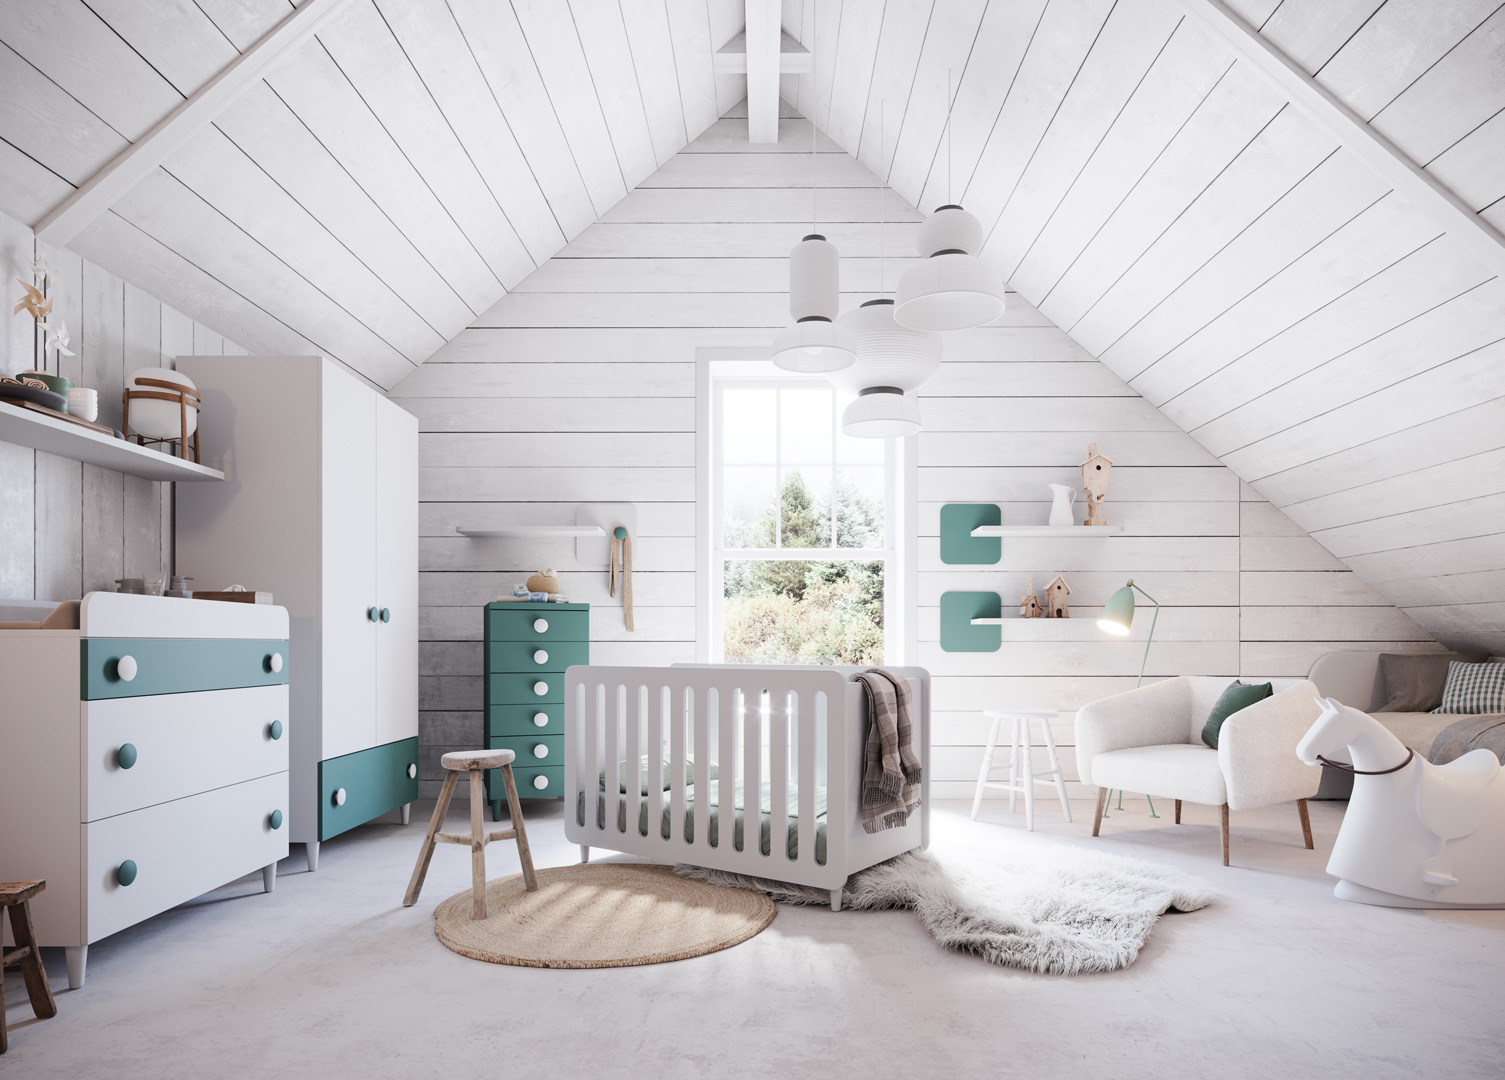 Top Baby bedrooms